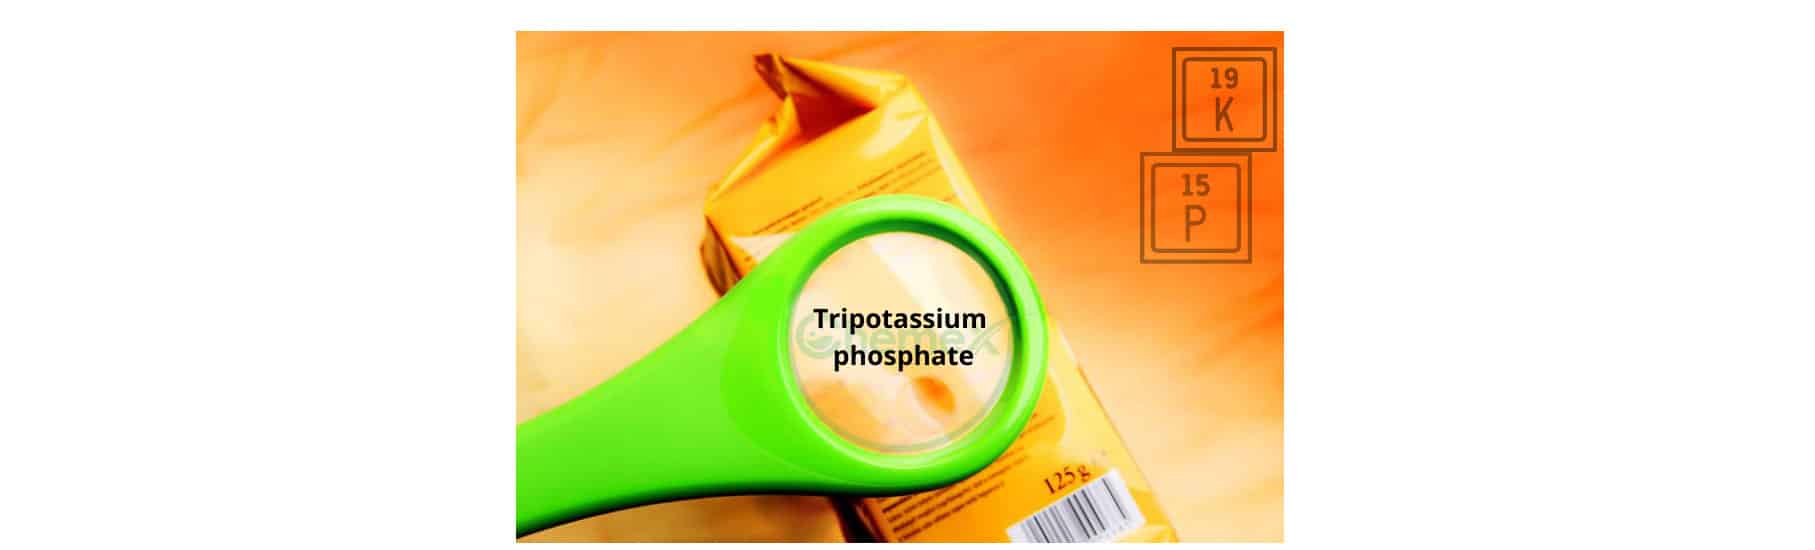 Tripotassium phosphate